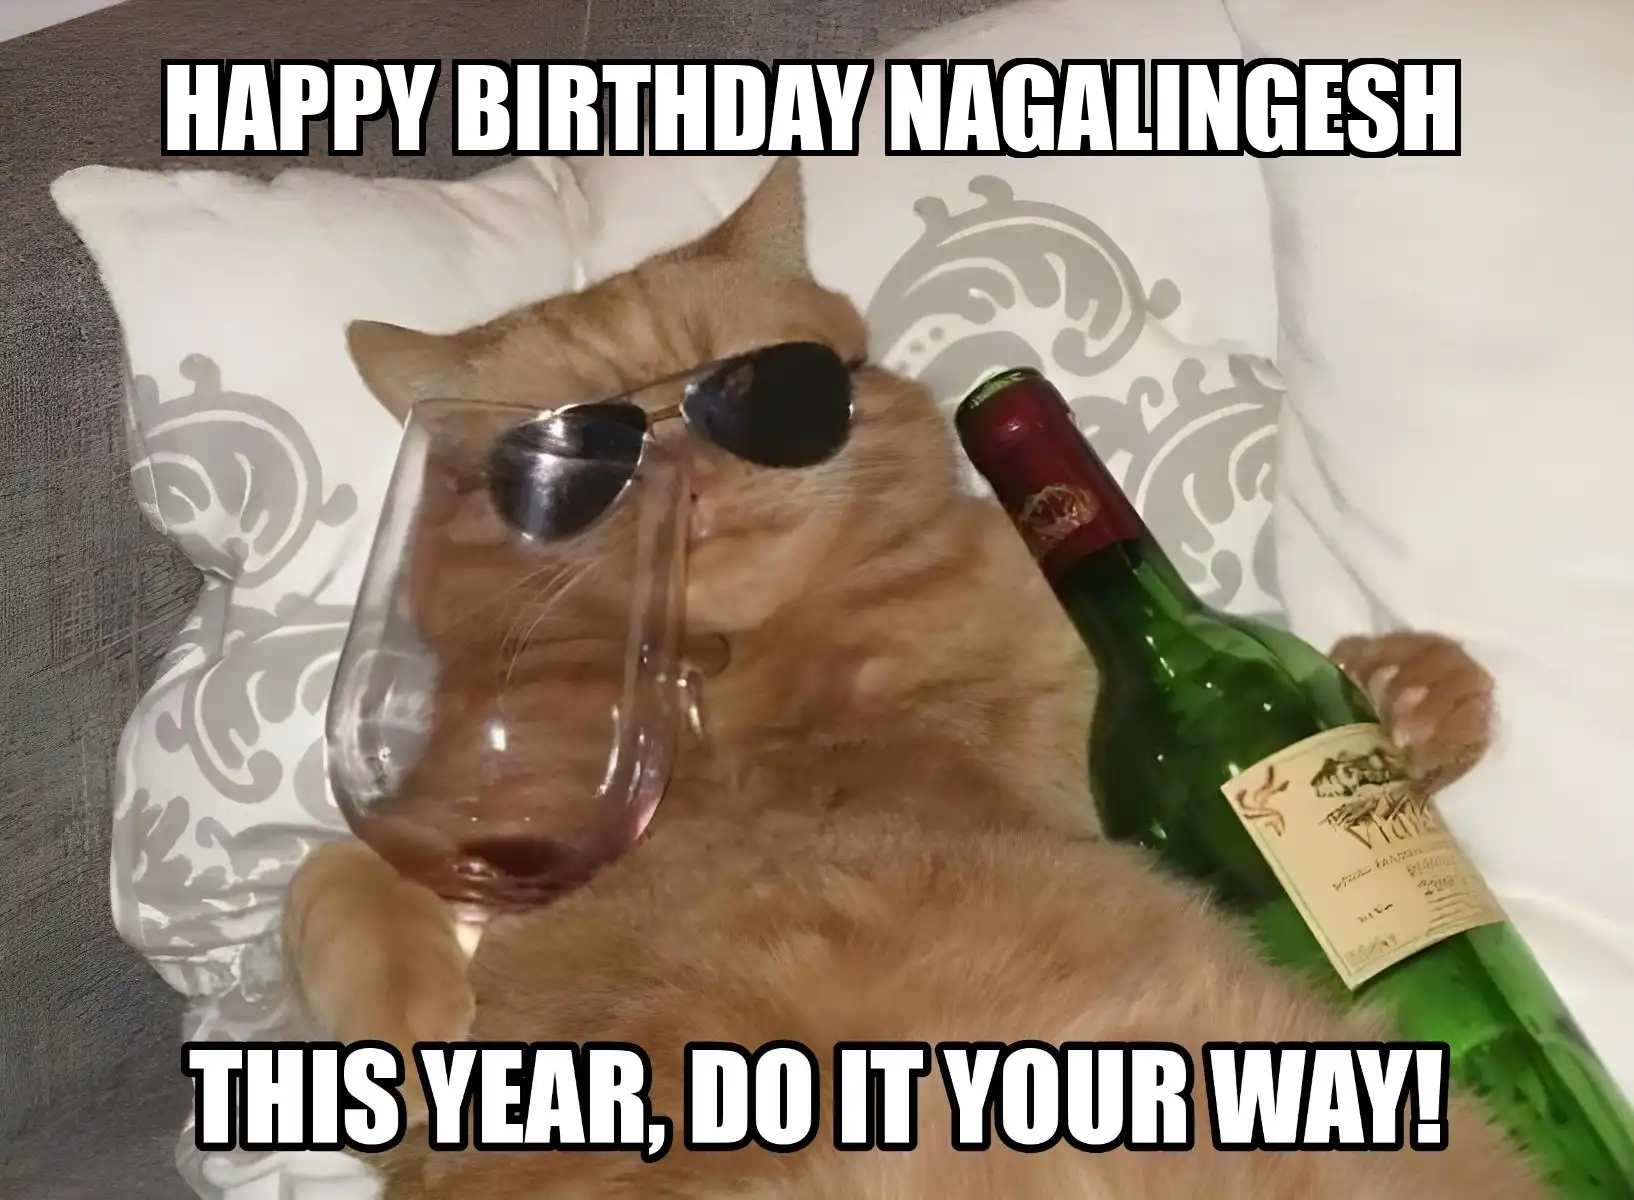 Happy Birthday Nagalingesh This Year Do It Your Way Meme